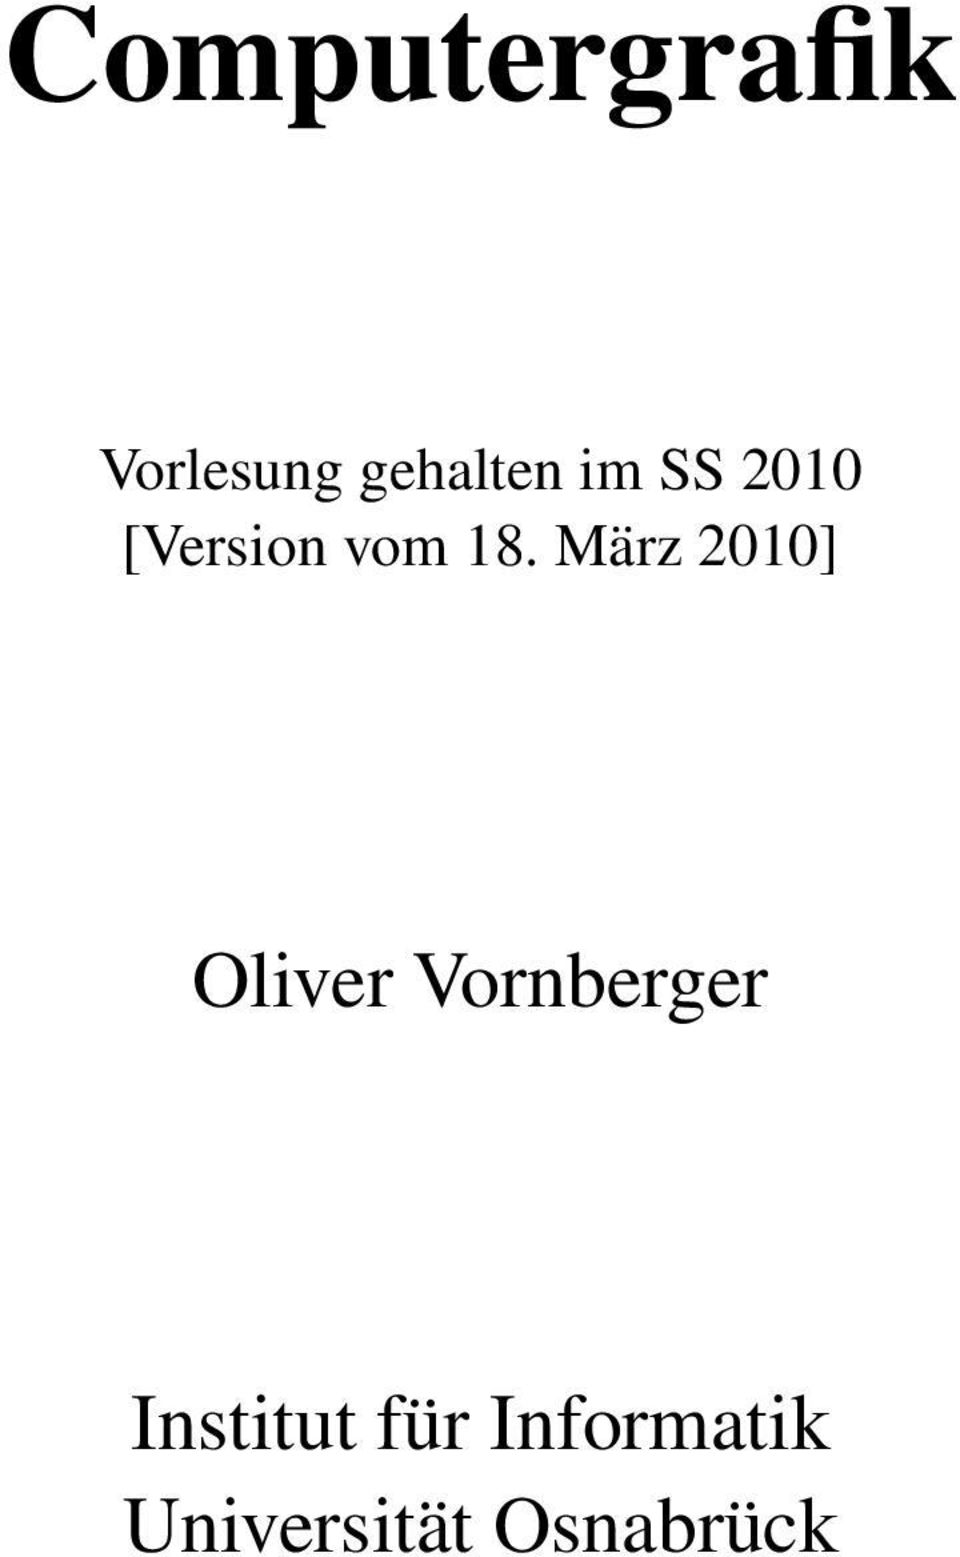 März 2010] Oliver Vornberger